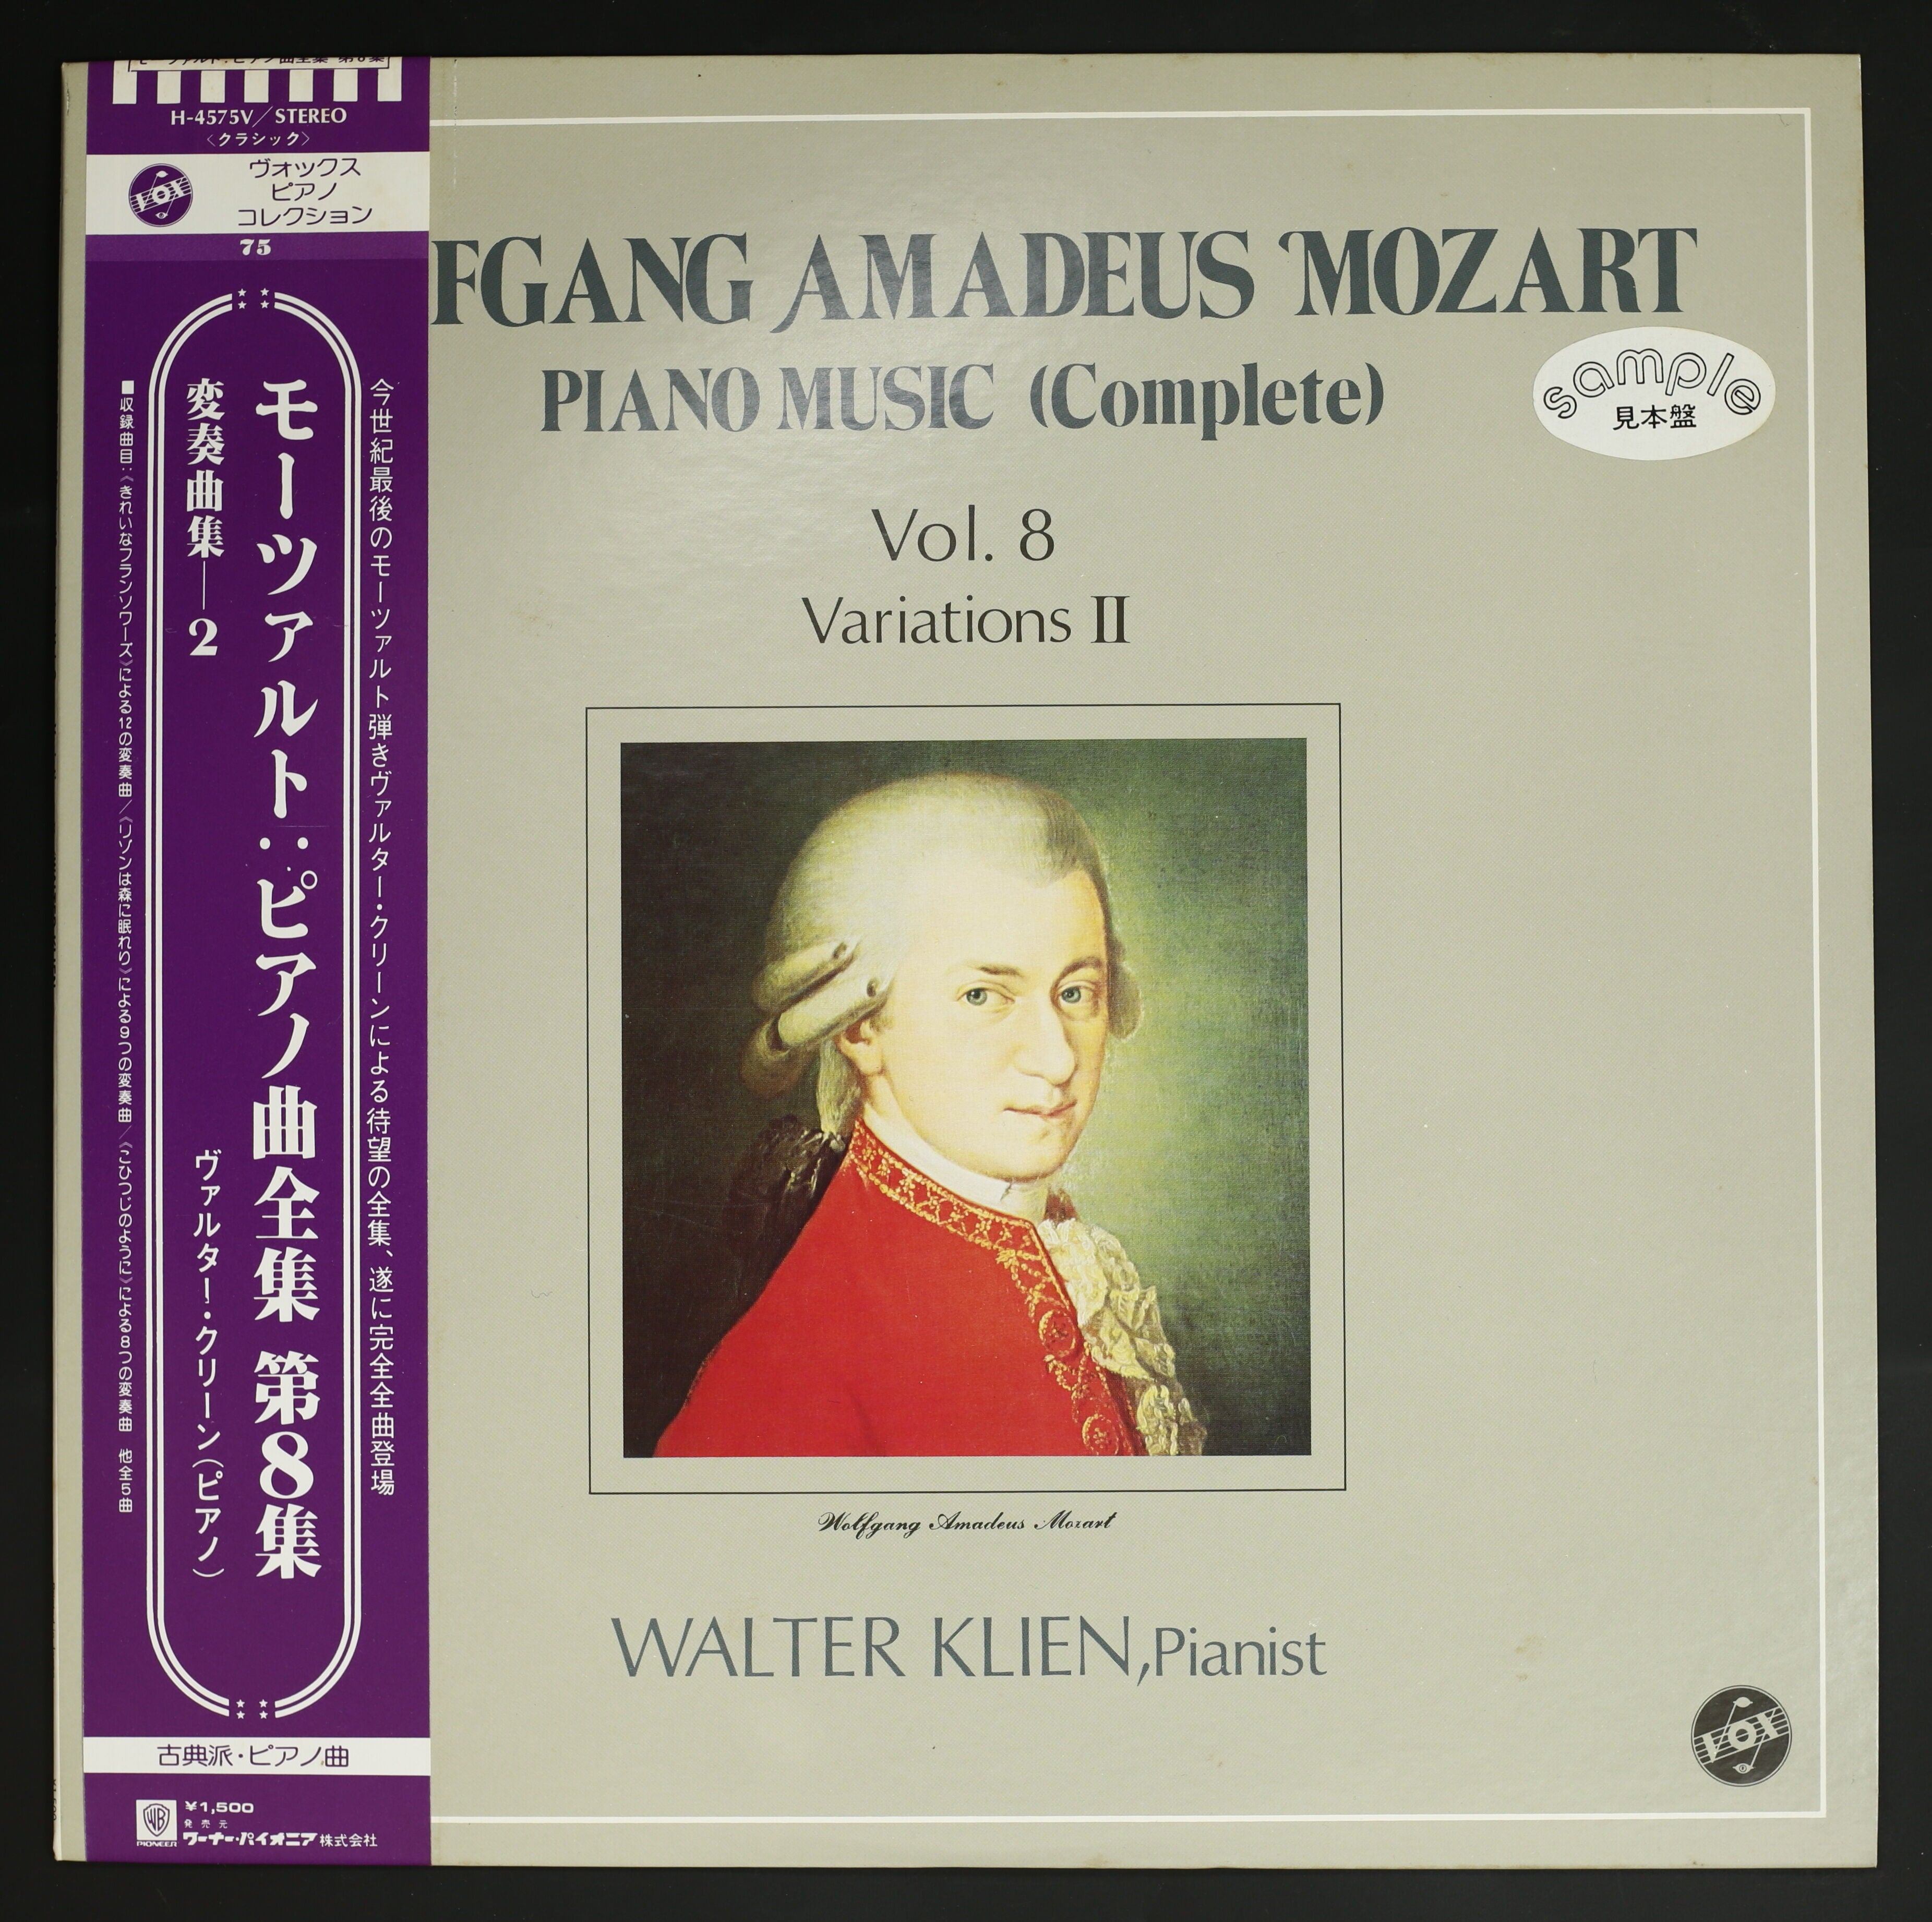 モーツァルト全集第8巻 ピアノ曲 - CD